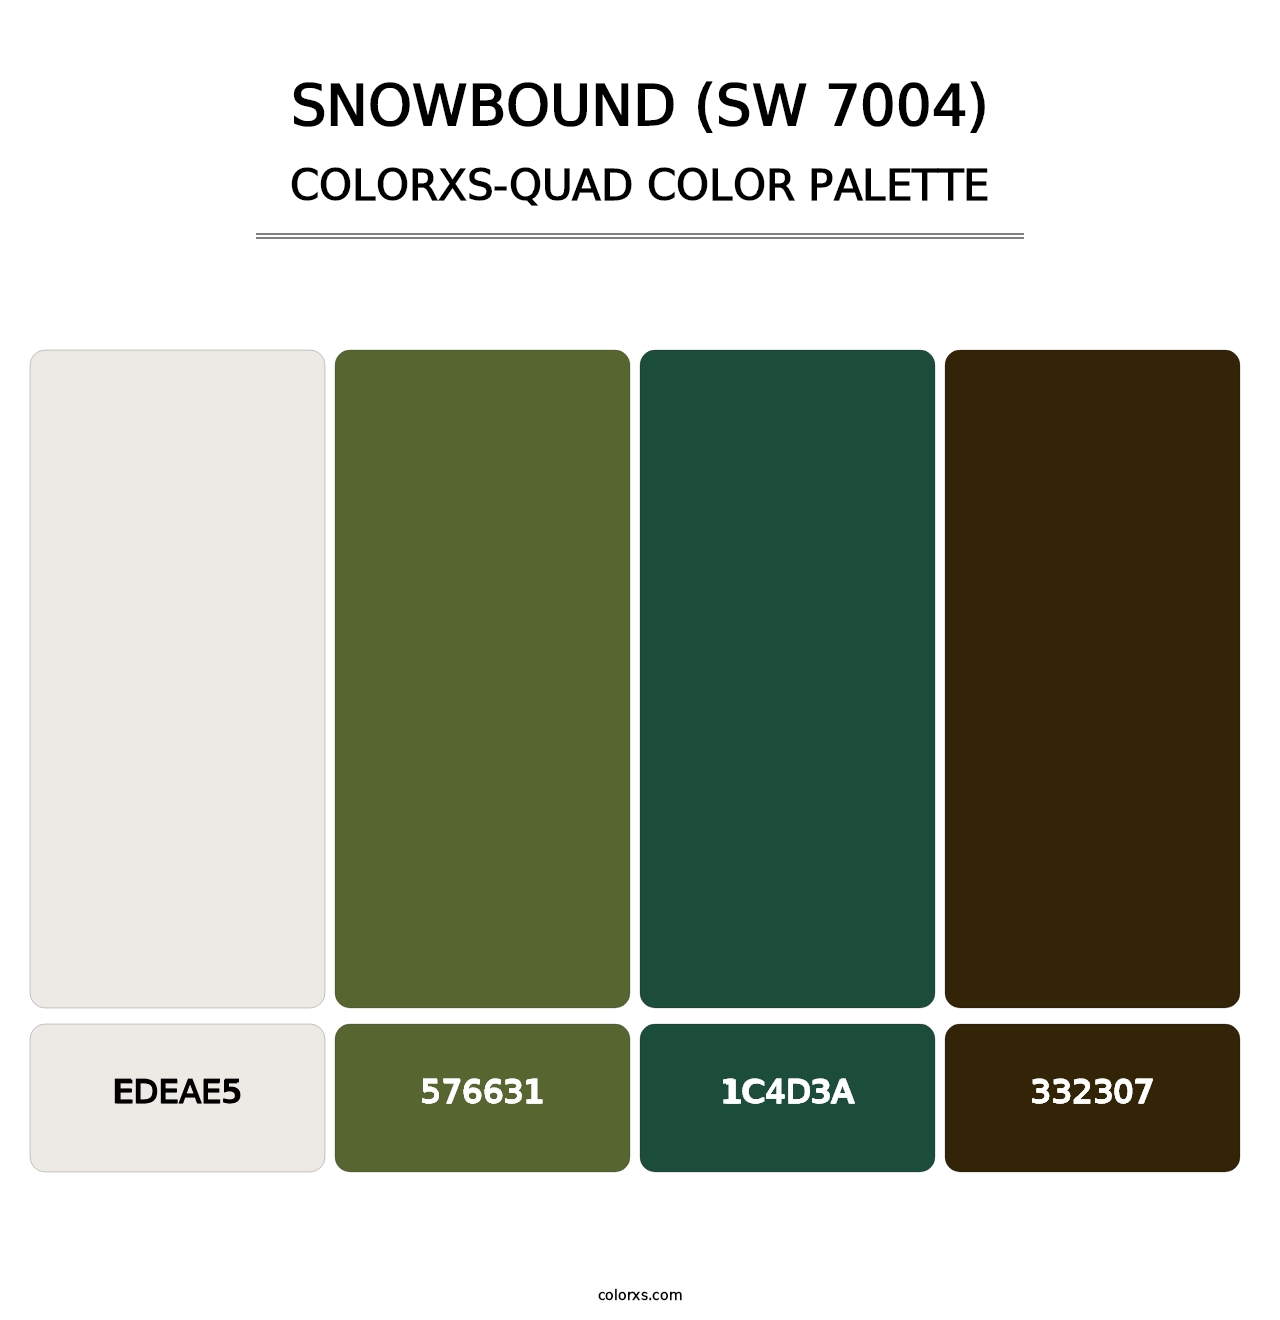 Snowbound (SW 7004) - Colorxs Quad Palette